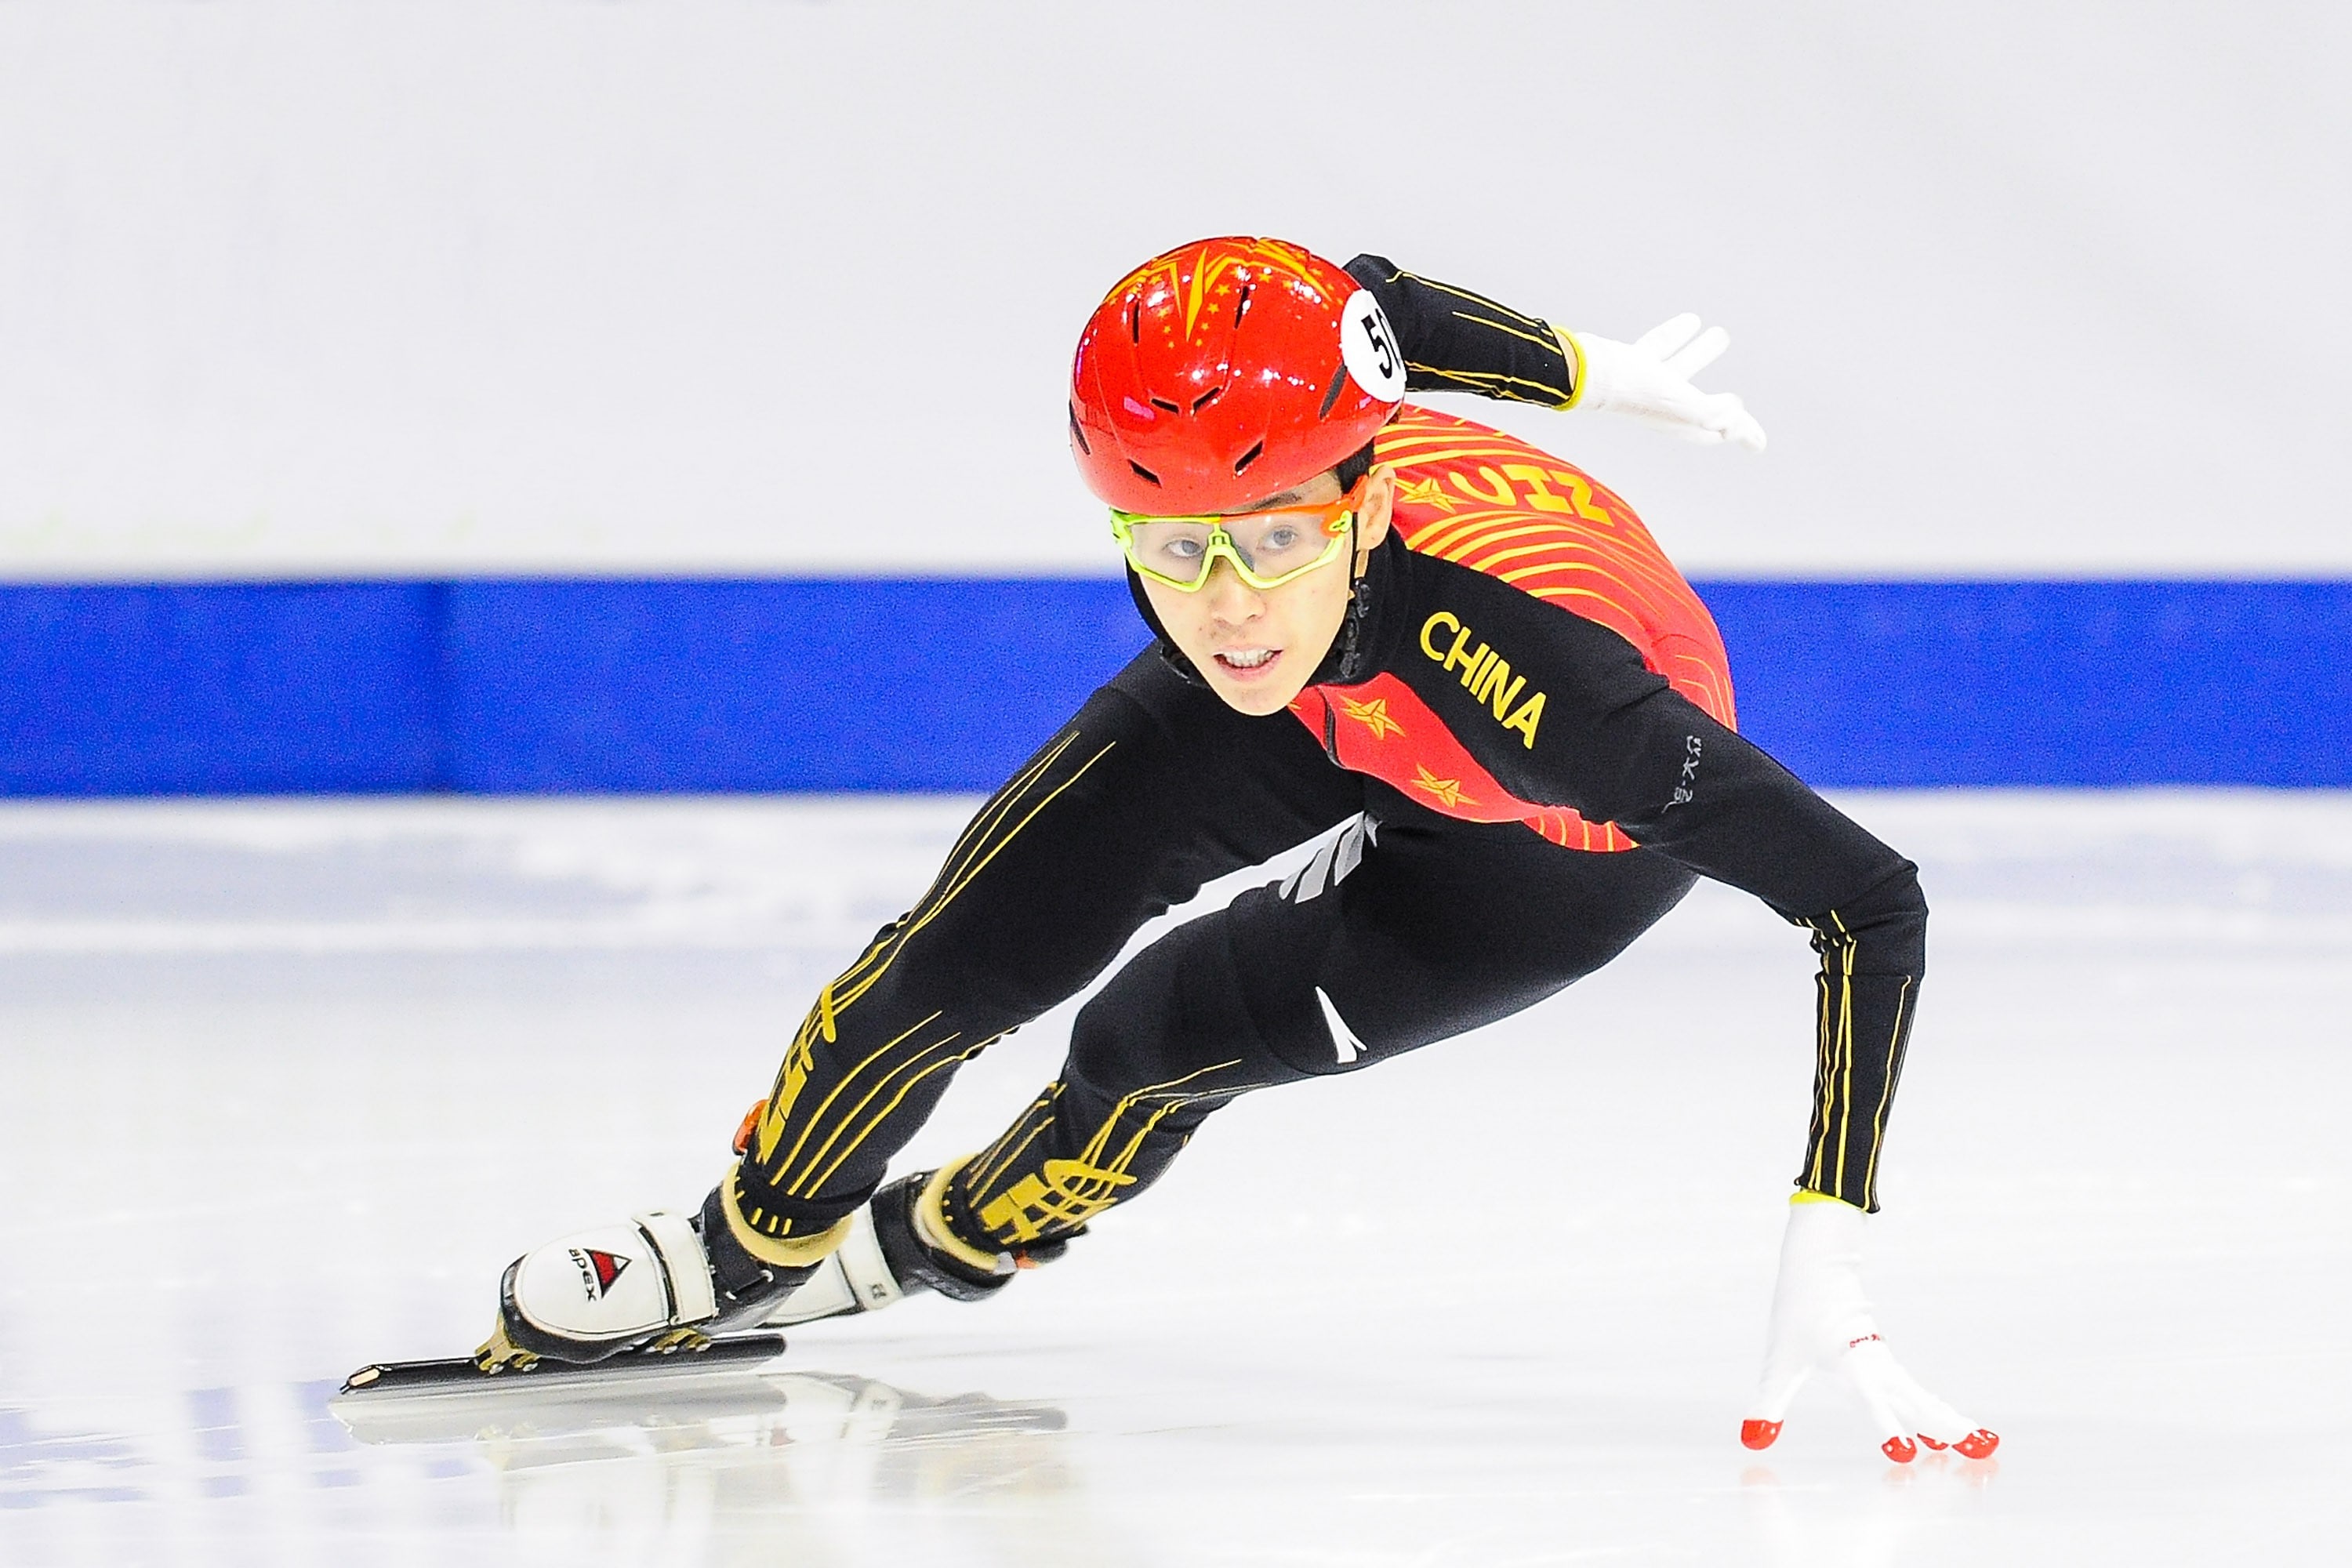 Fan Kexin, la patinadora china de velocidad, ganó dos medallas en Pekín